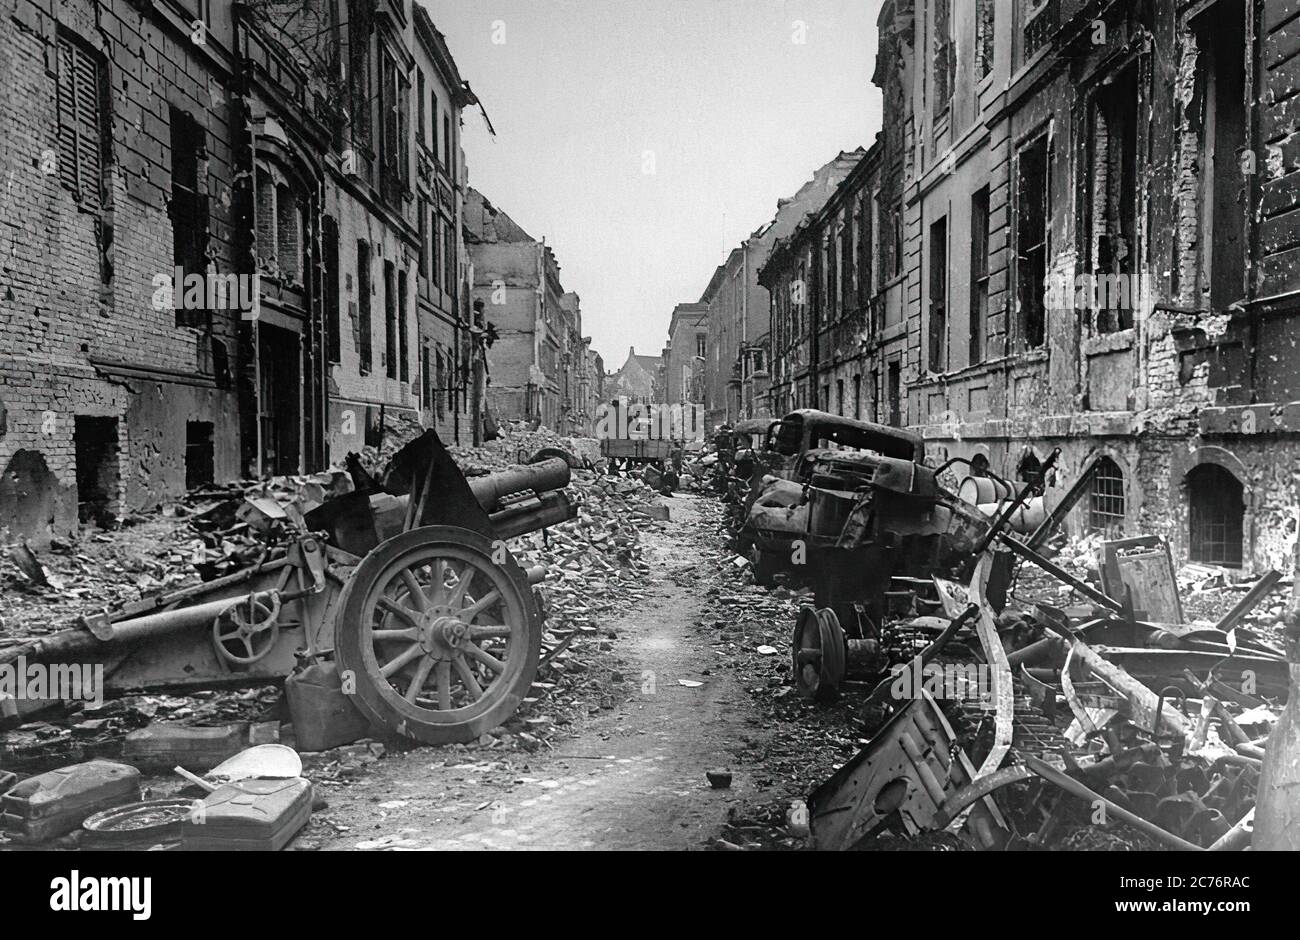 41 г. Берлин в 1945 году после войны. Вторая мировая Берлин 1945.